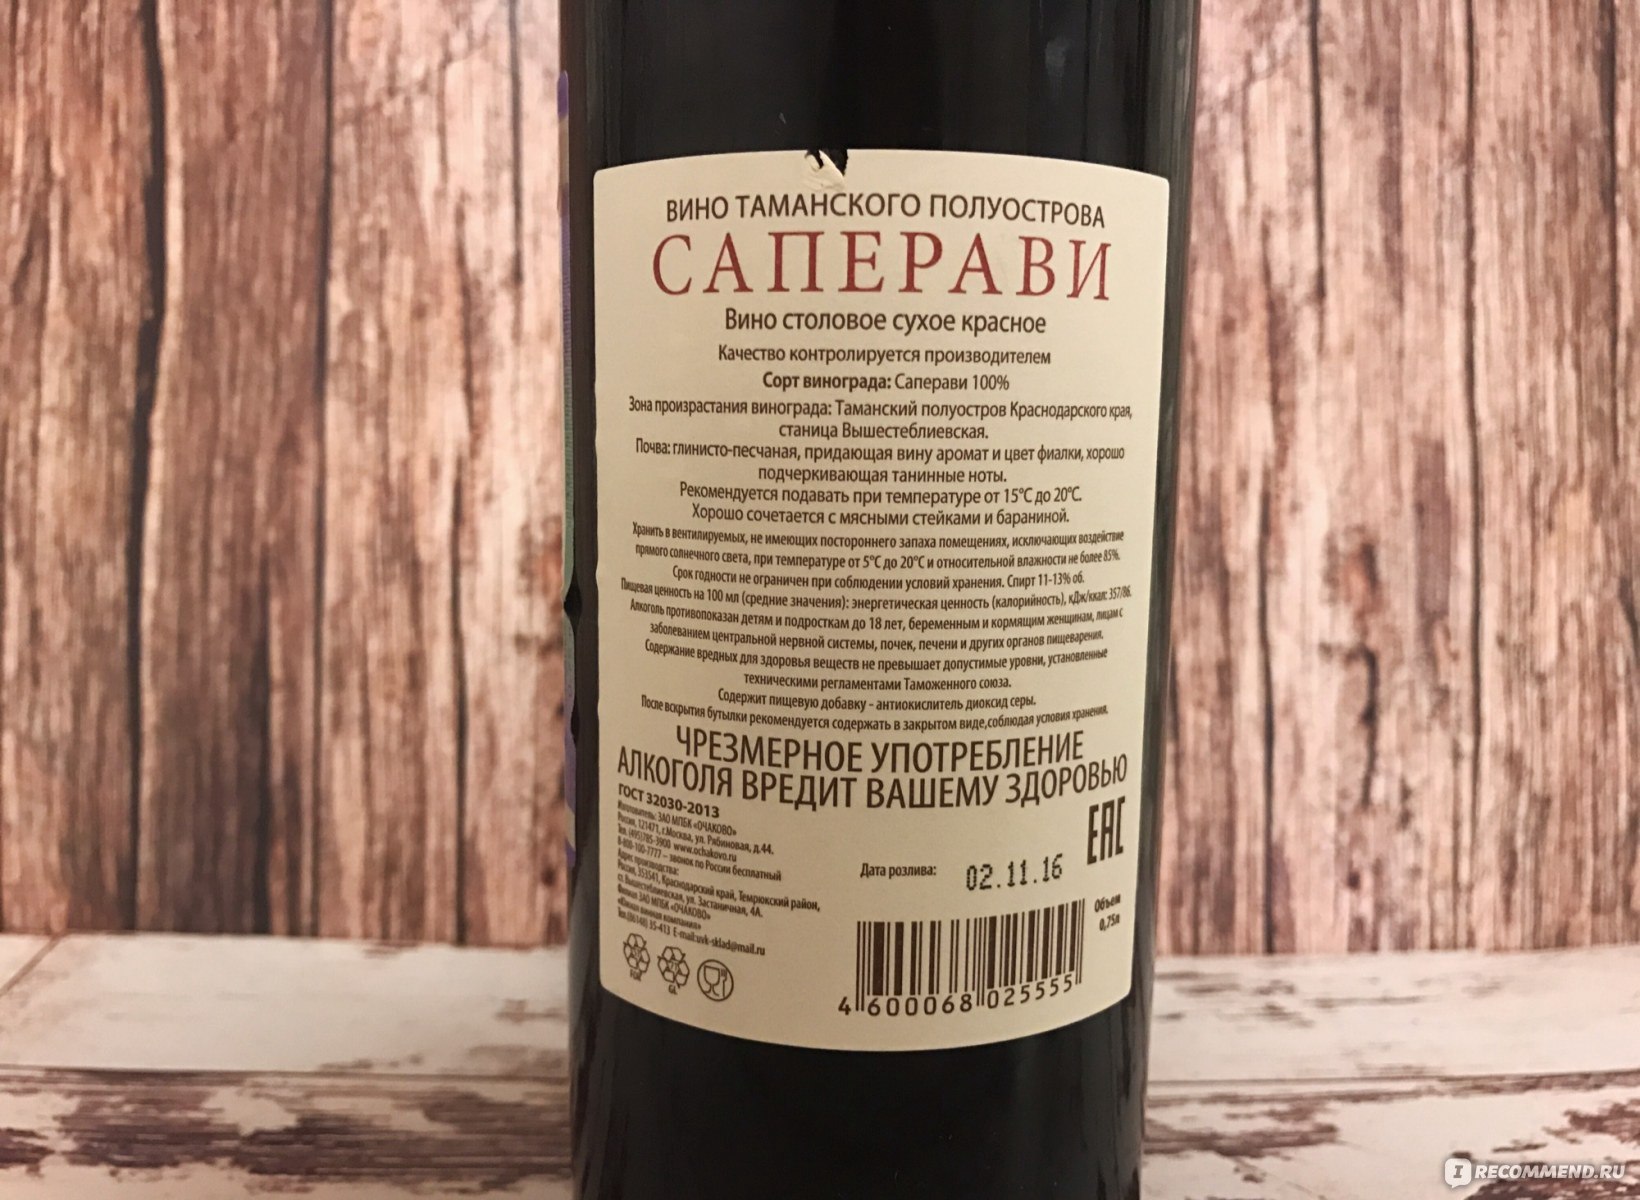 Вина тамани саперави красное. Вино сорта Саперави. Саперави красное сухое грузинское. Вино Саперави красное сухое. Грузинское вино Саперави красное сухое.